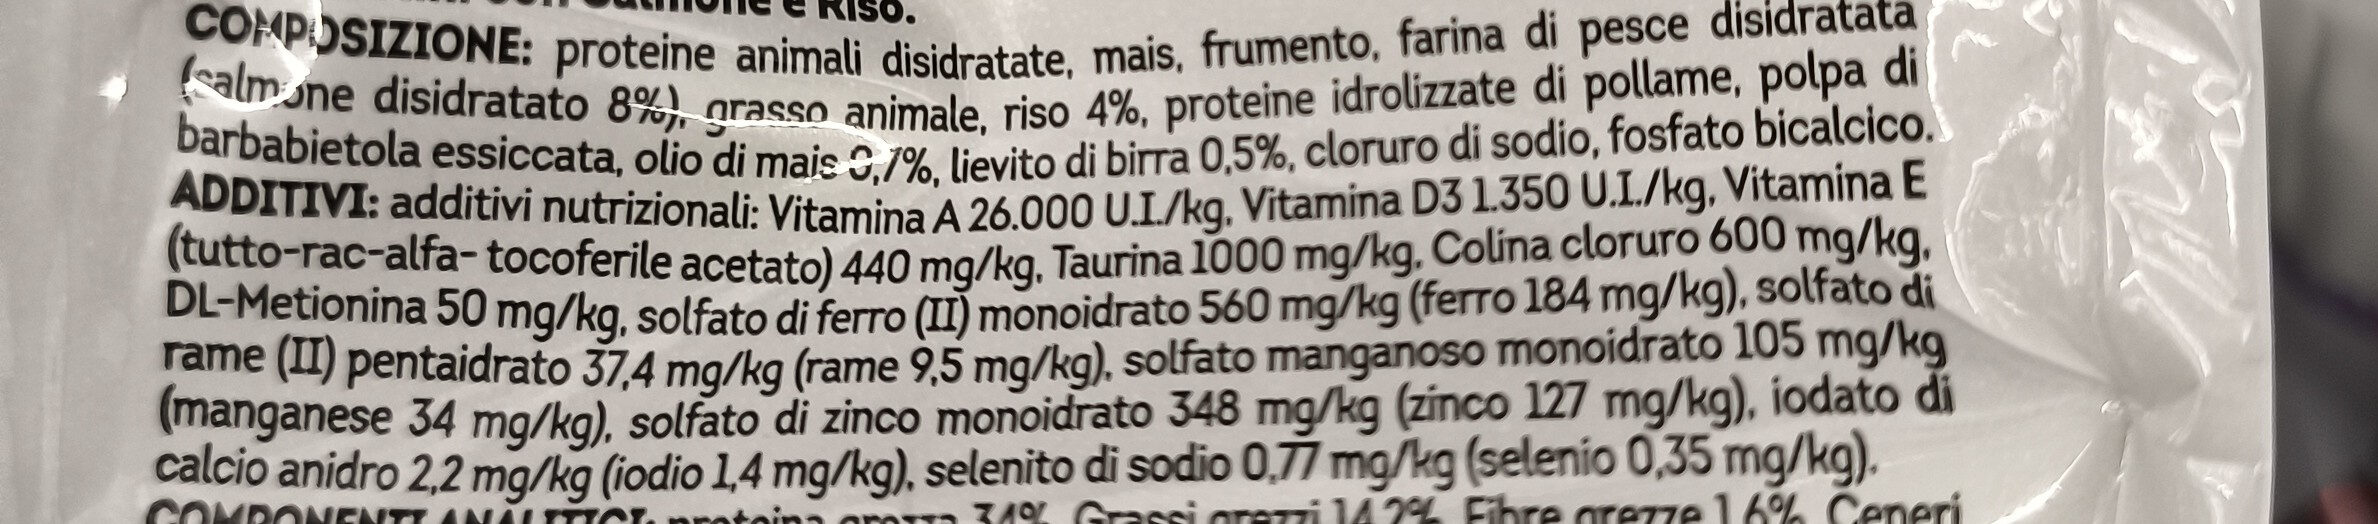 Croccantini Salmone e Riso - Ingredients - it